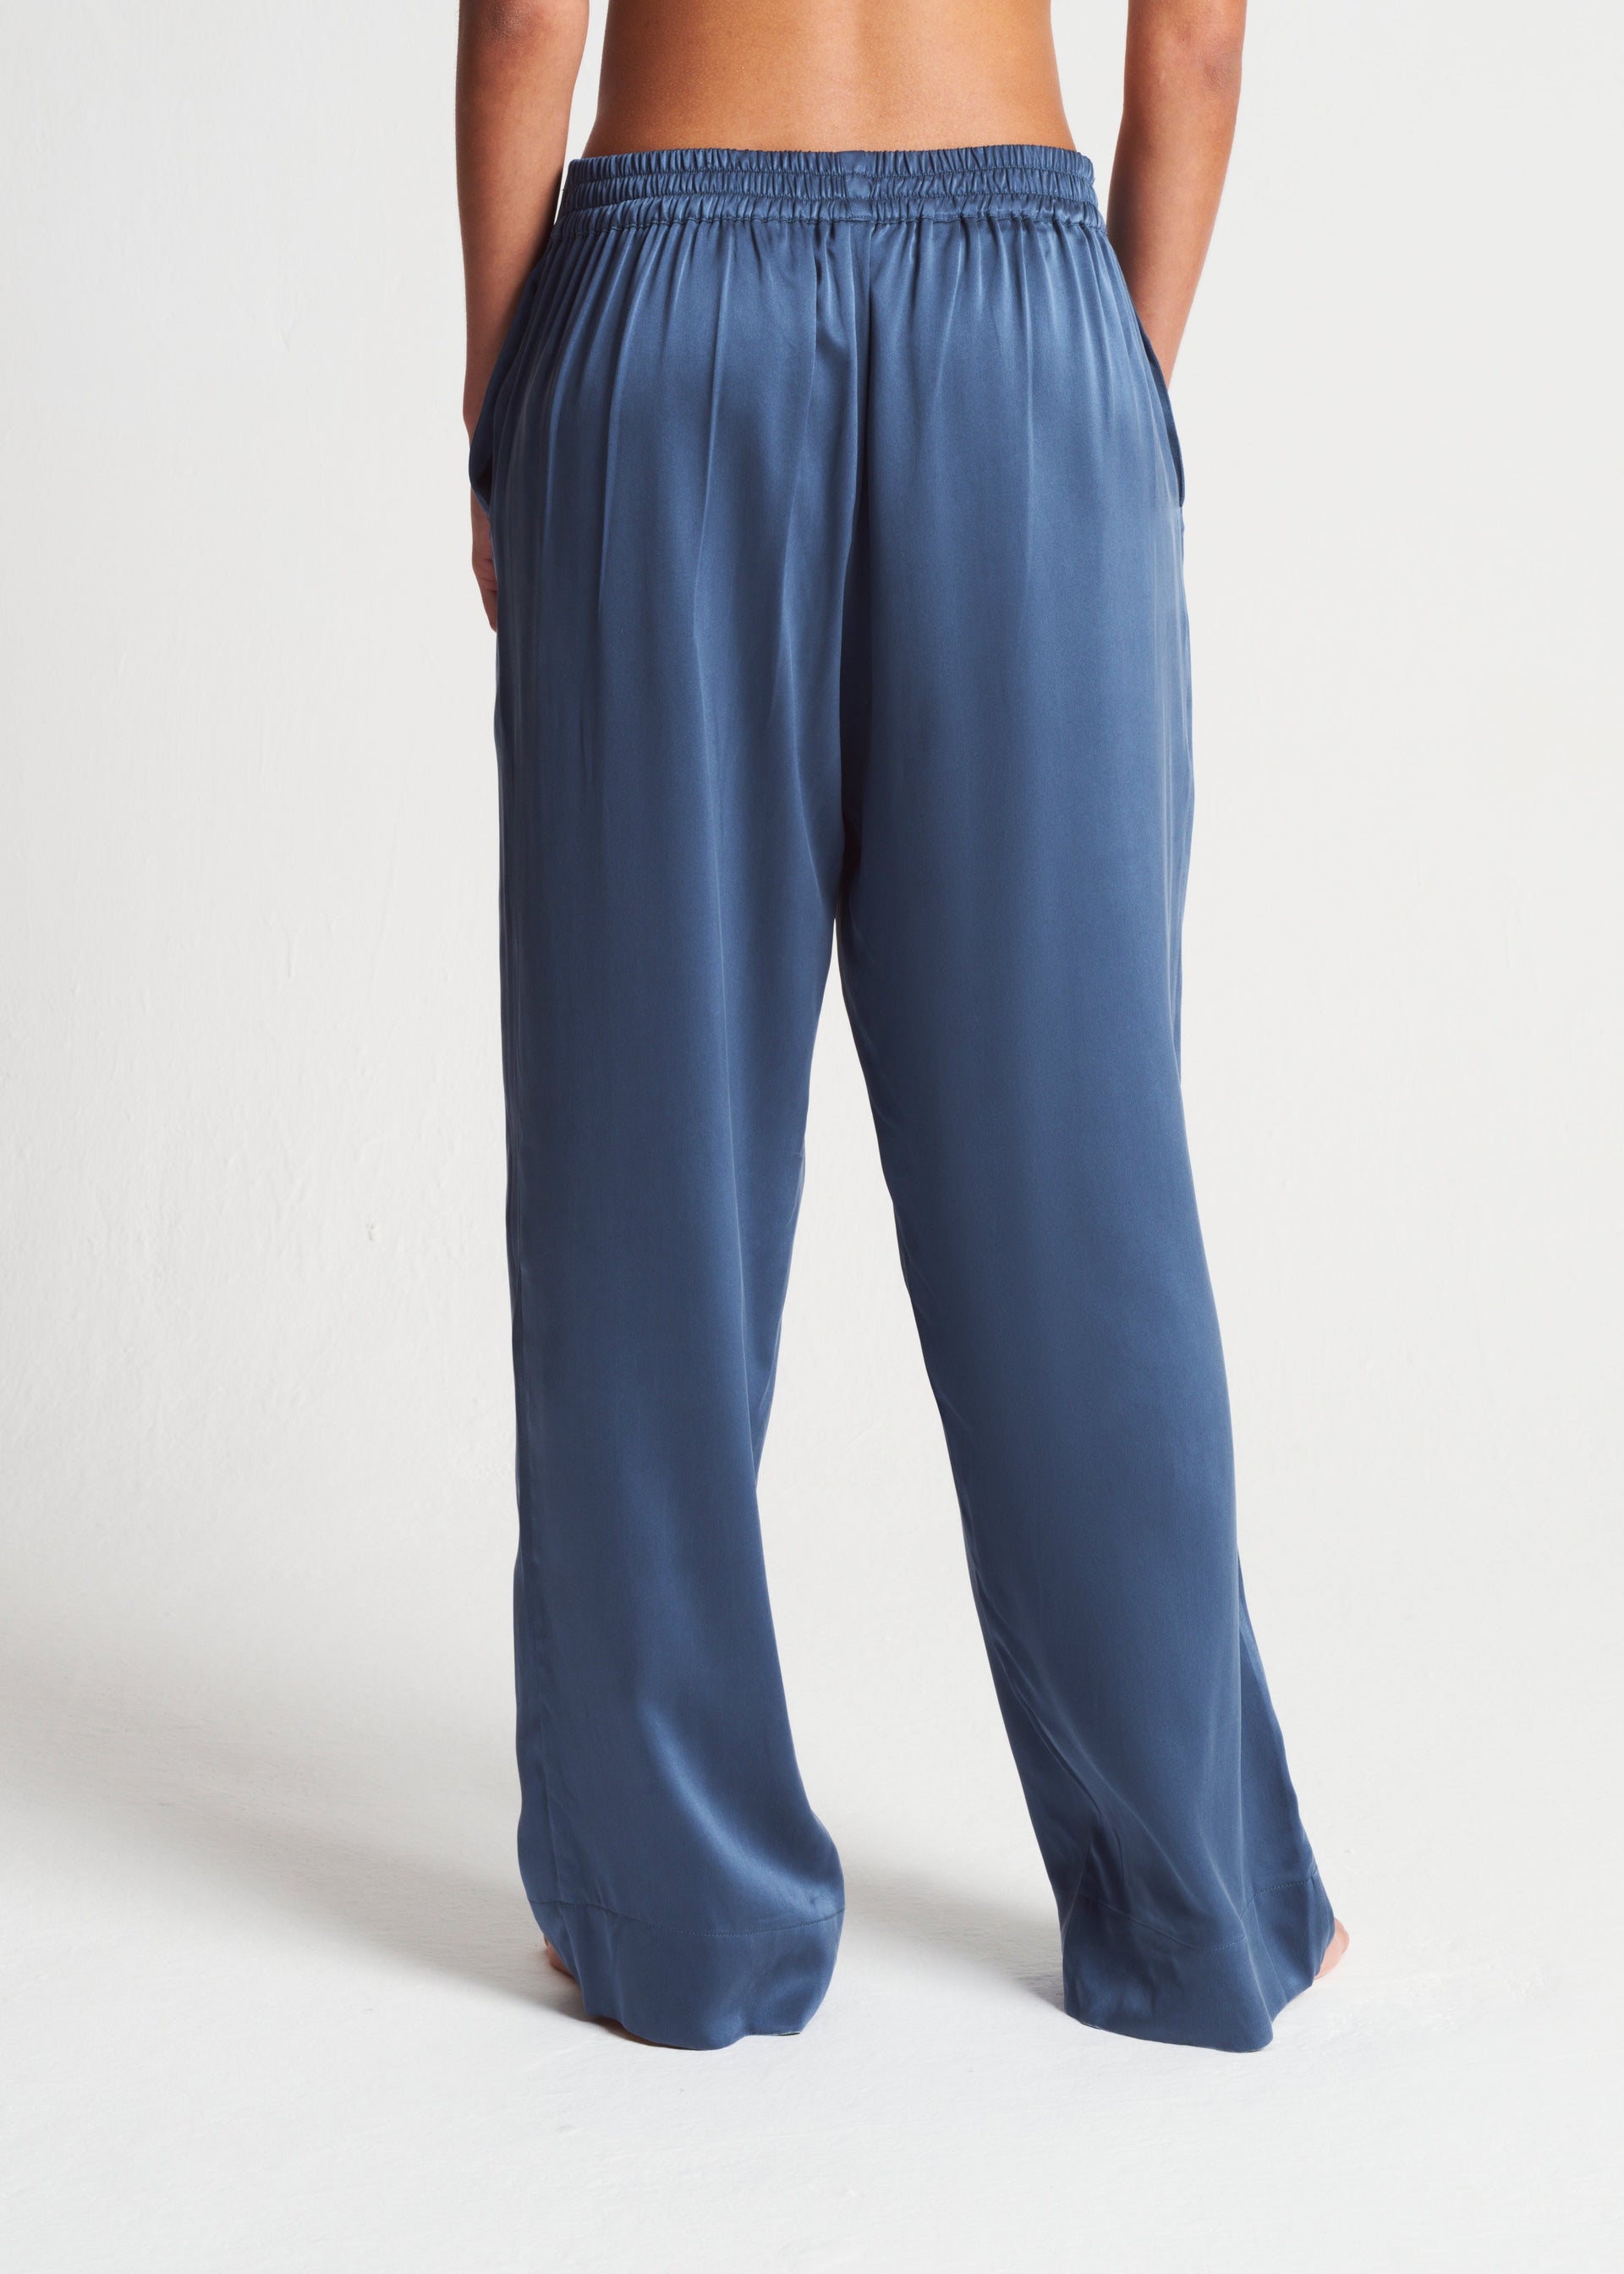 London Steel Blue Silk Charmeuse Pyjama Bottom